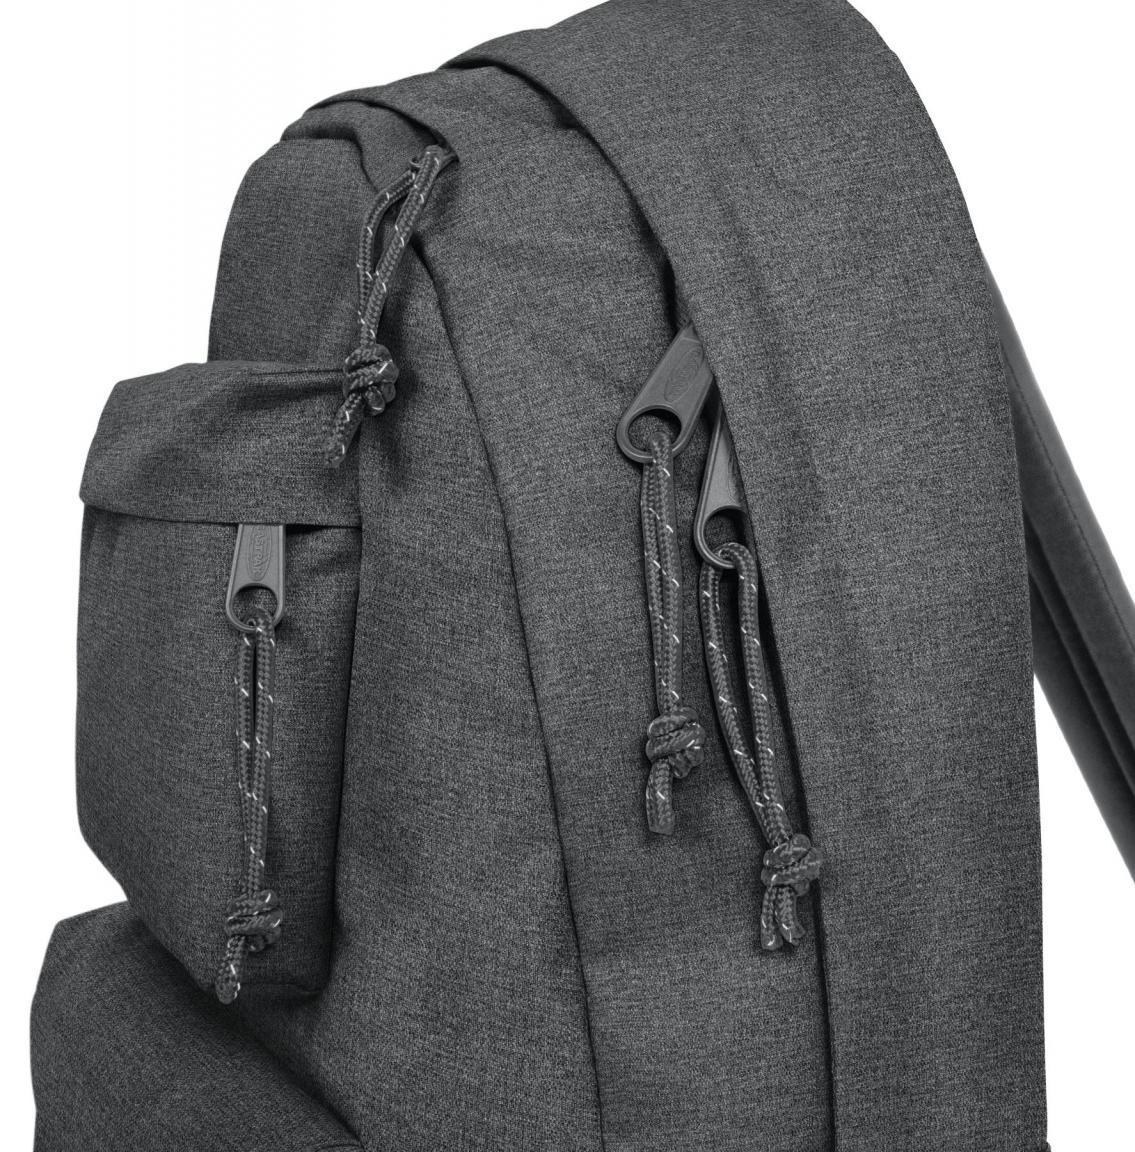 Backpack dunkelgrau meliert Eastpak Padded Double Laptop 13,3Z gepolstert